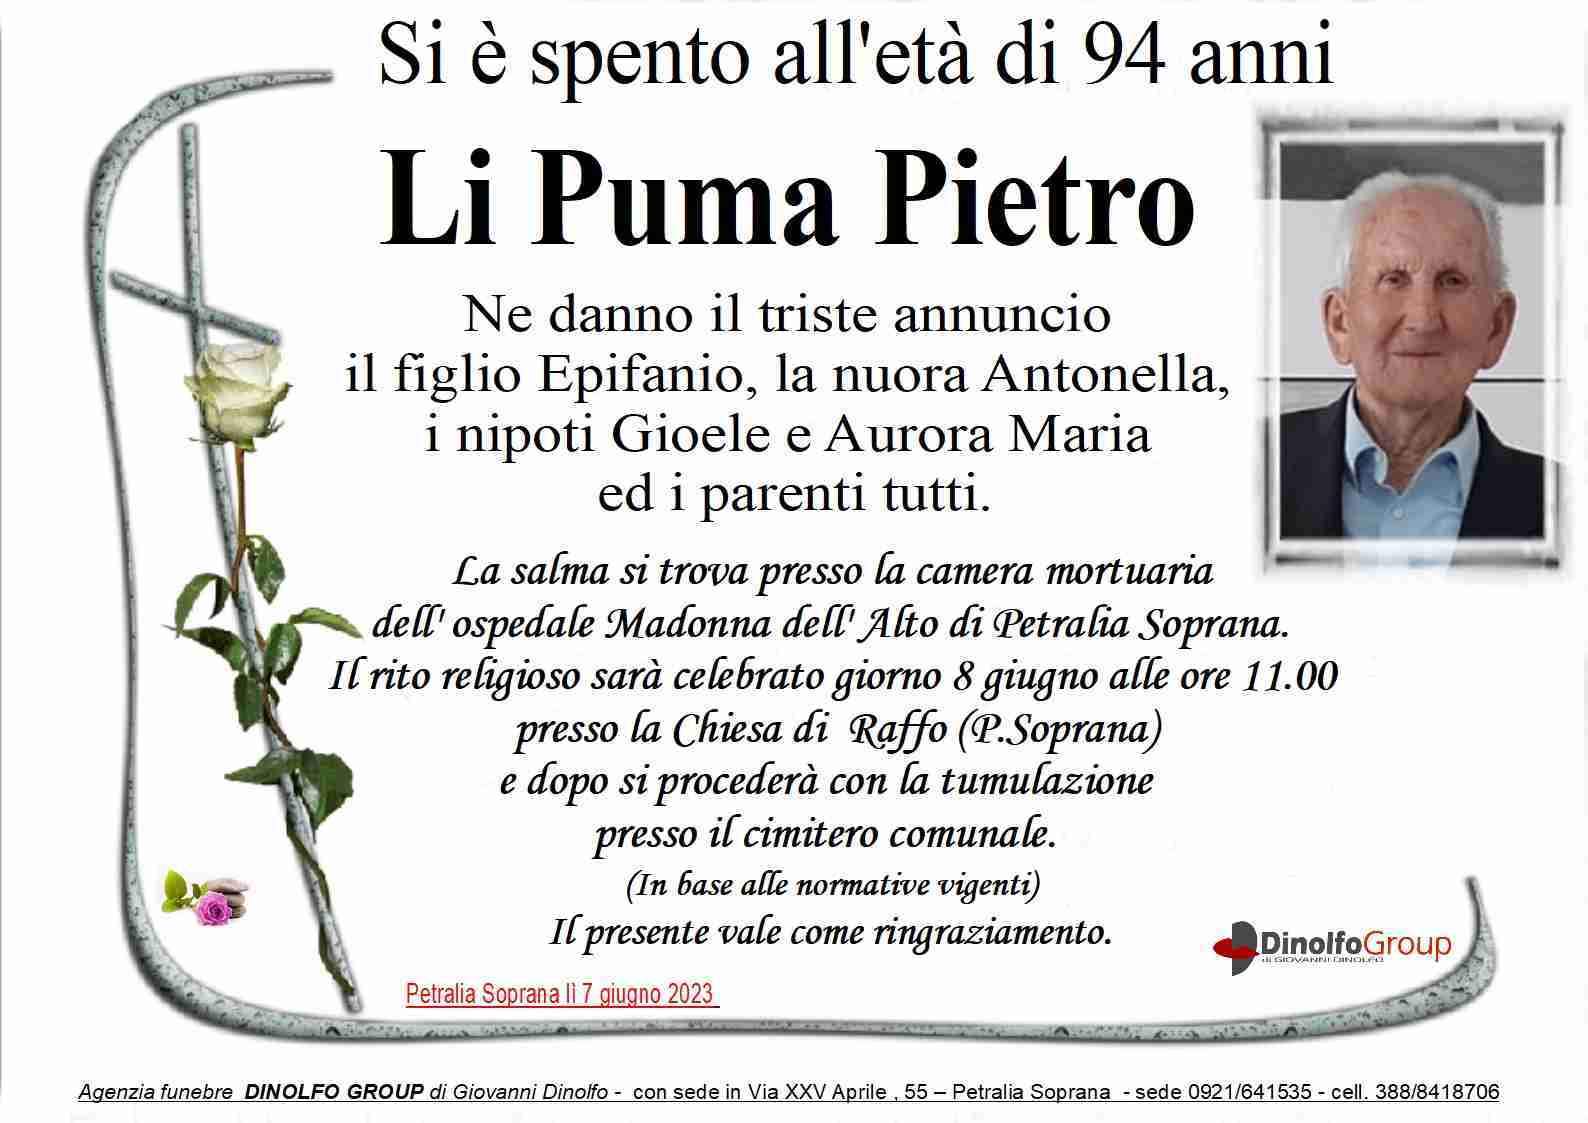 Li Puma Pietro